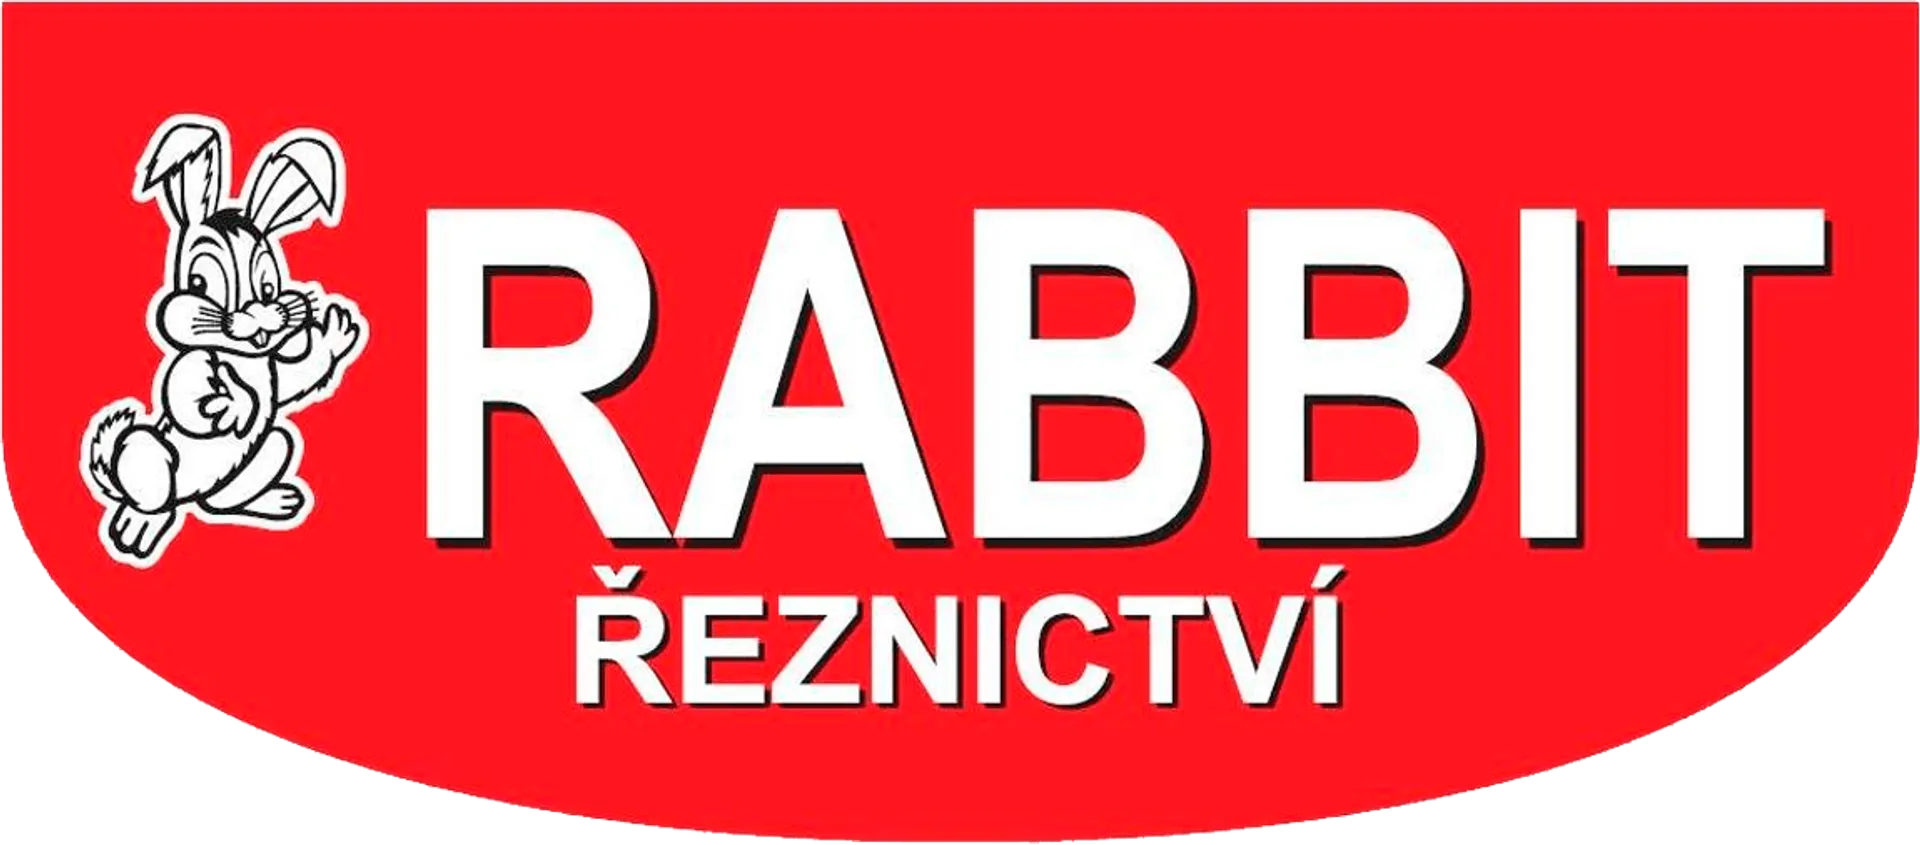 RABBIT ŘEZNICTVÍ logo of current catalogue